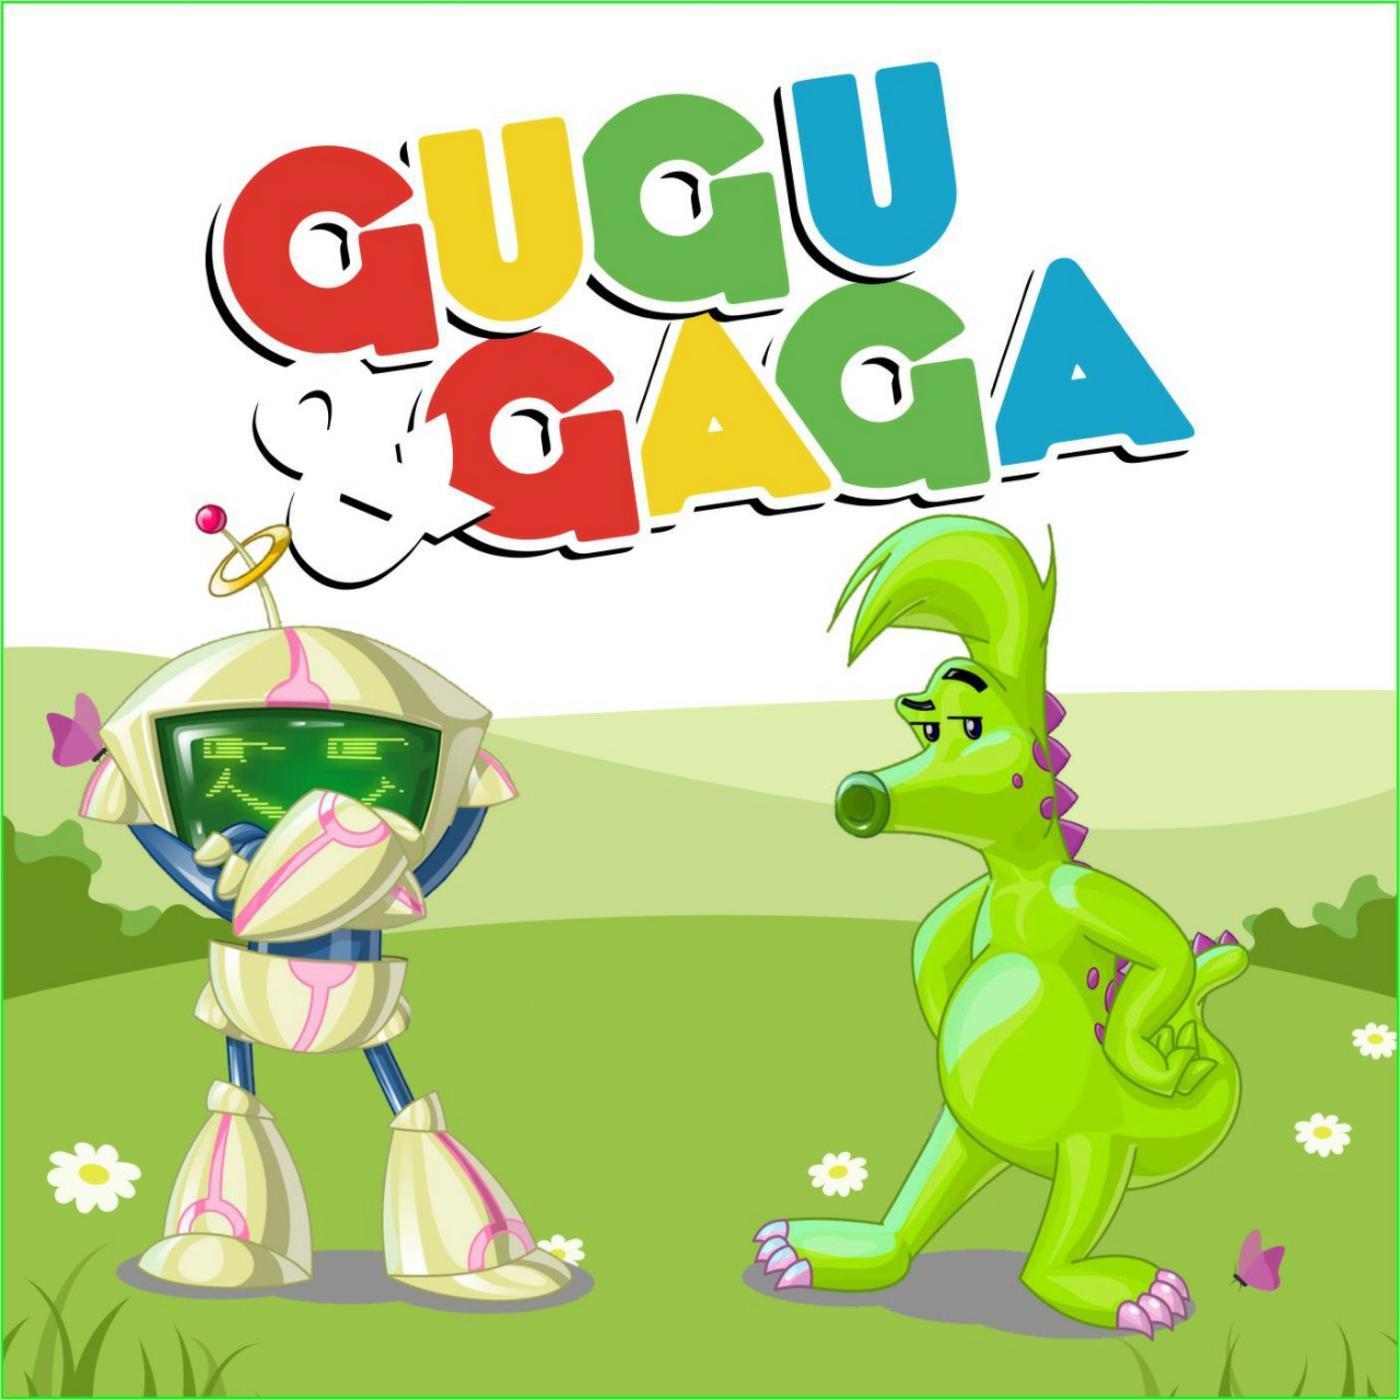 Gugu & Gaga